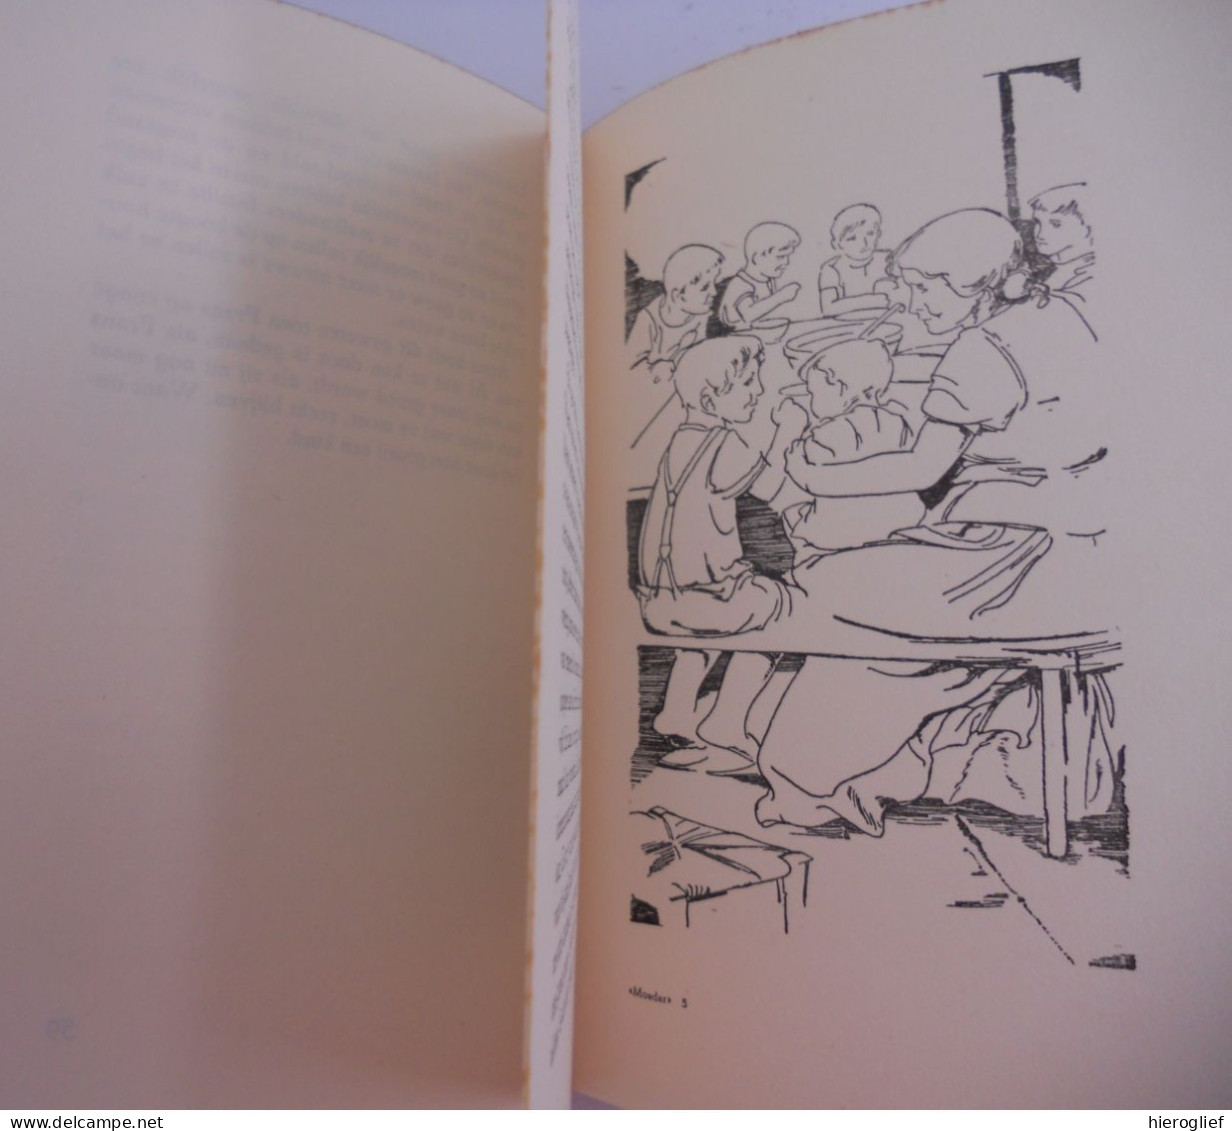 MOEDER door Gerard baron Walschap ° Londerzeel + Antwerpen Vlaams schrijver / 1950 - 1ste DRUK tekeningen Jozef Geerts